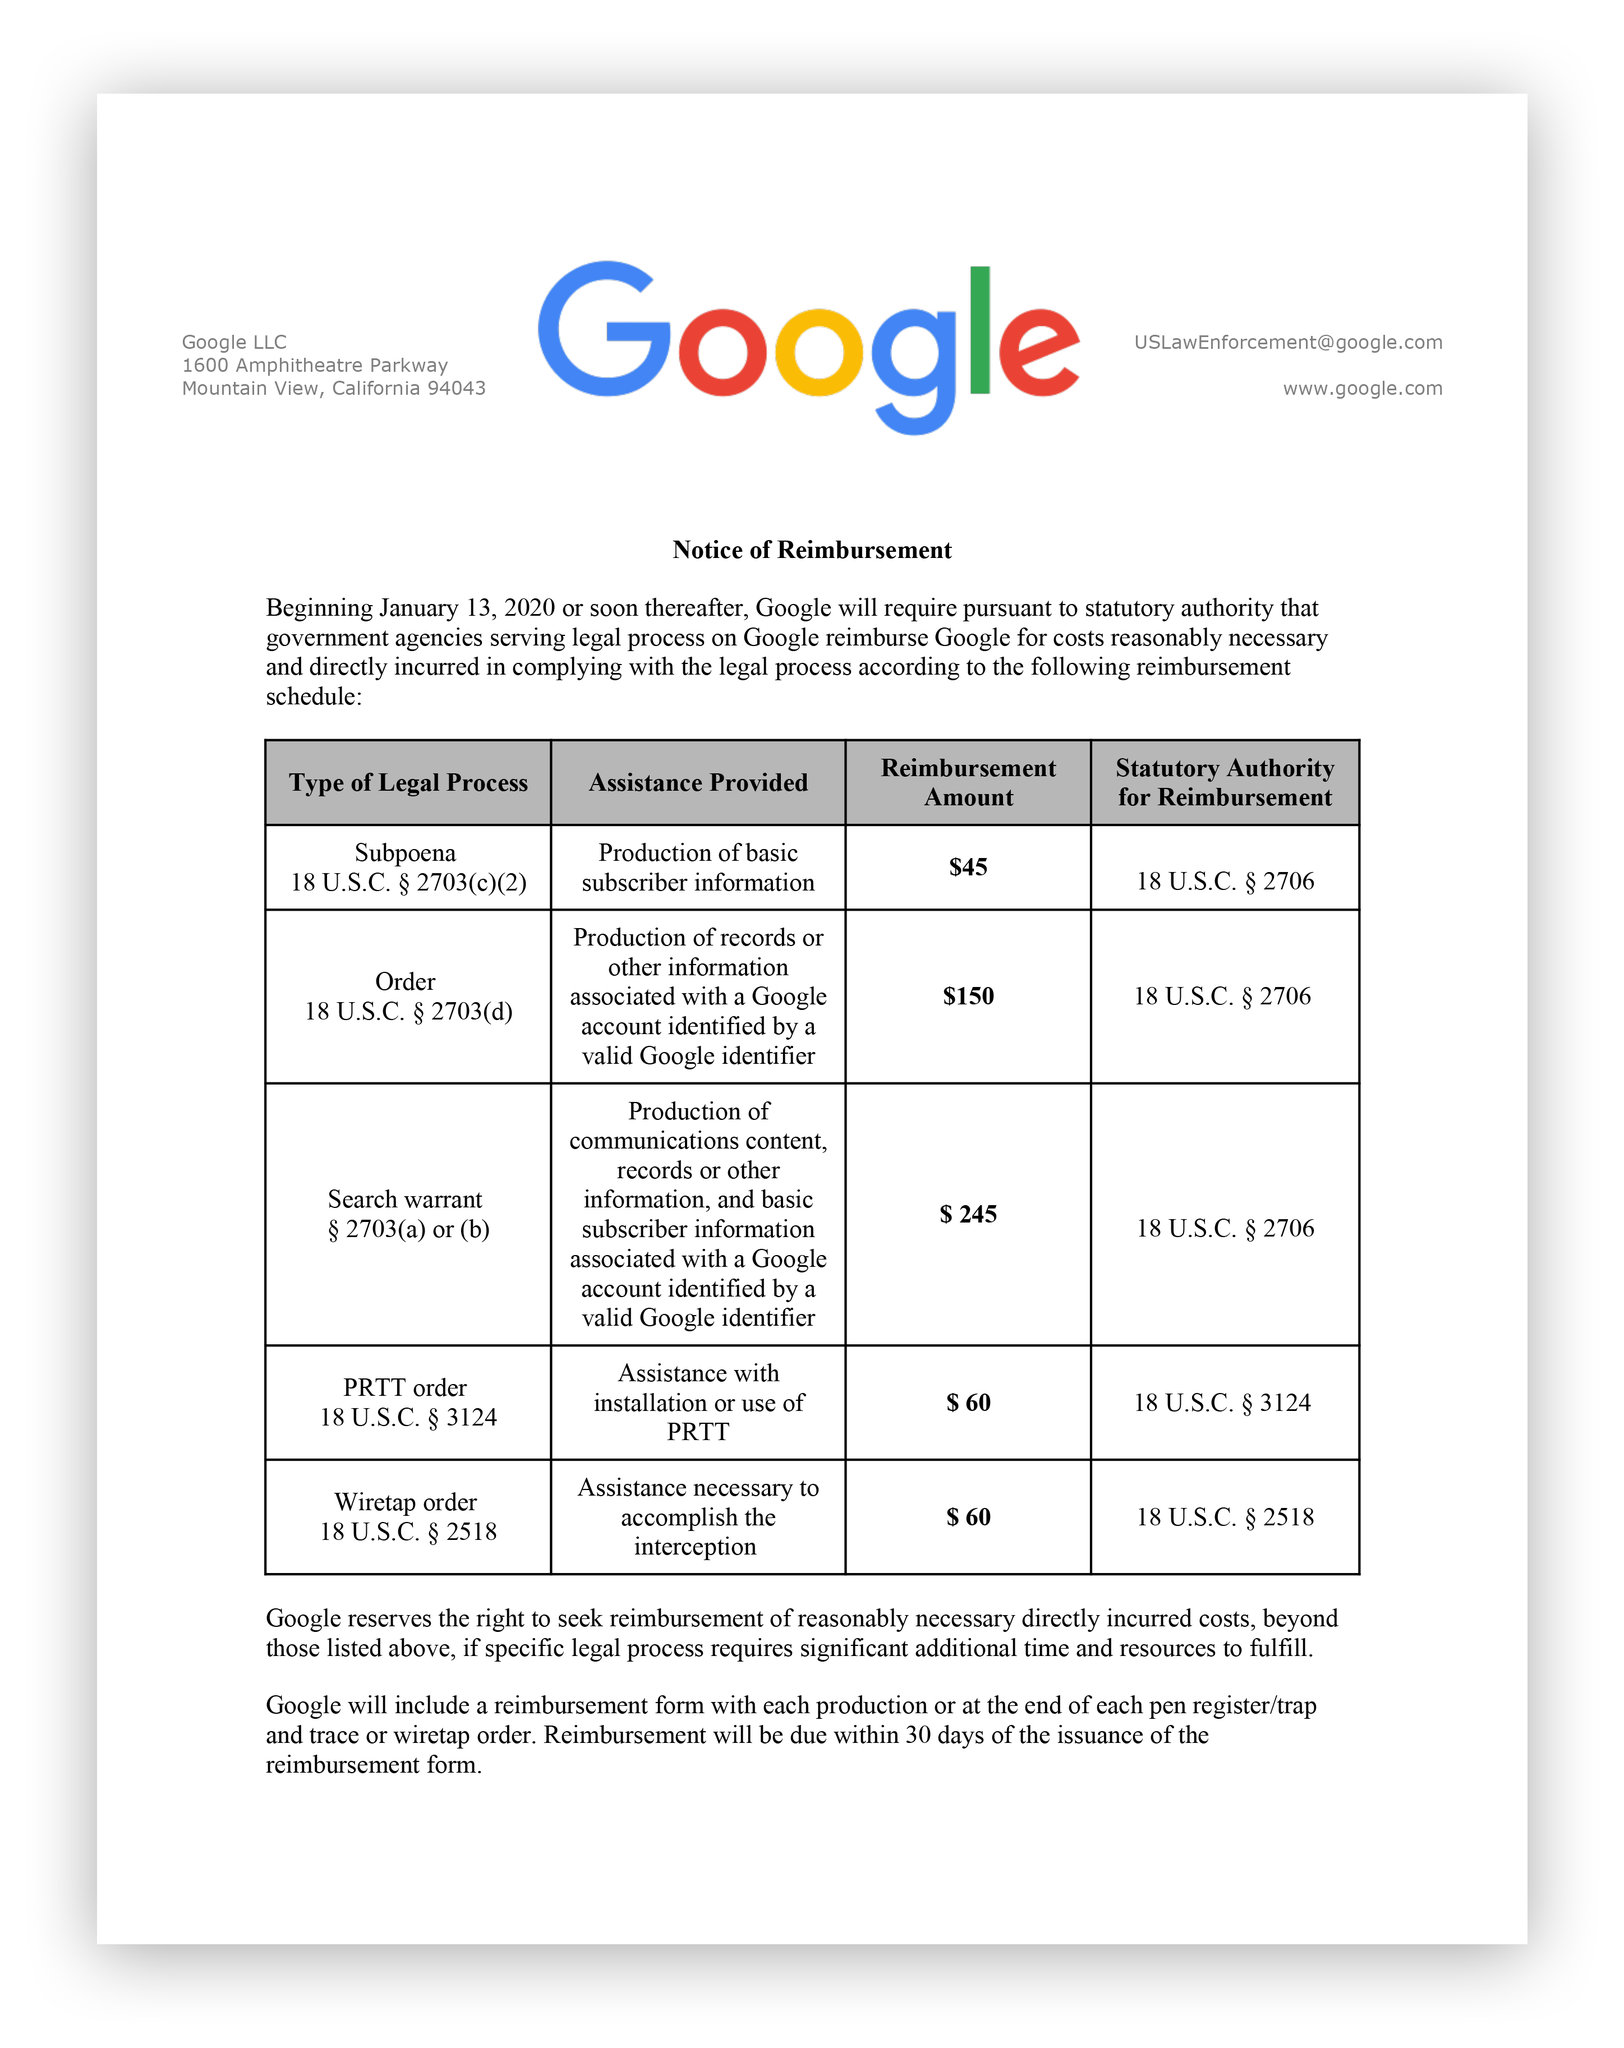 Google przygotowało cennik za pomoc w dochodzeniach. 60 dol. za podsłuch